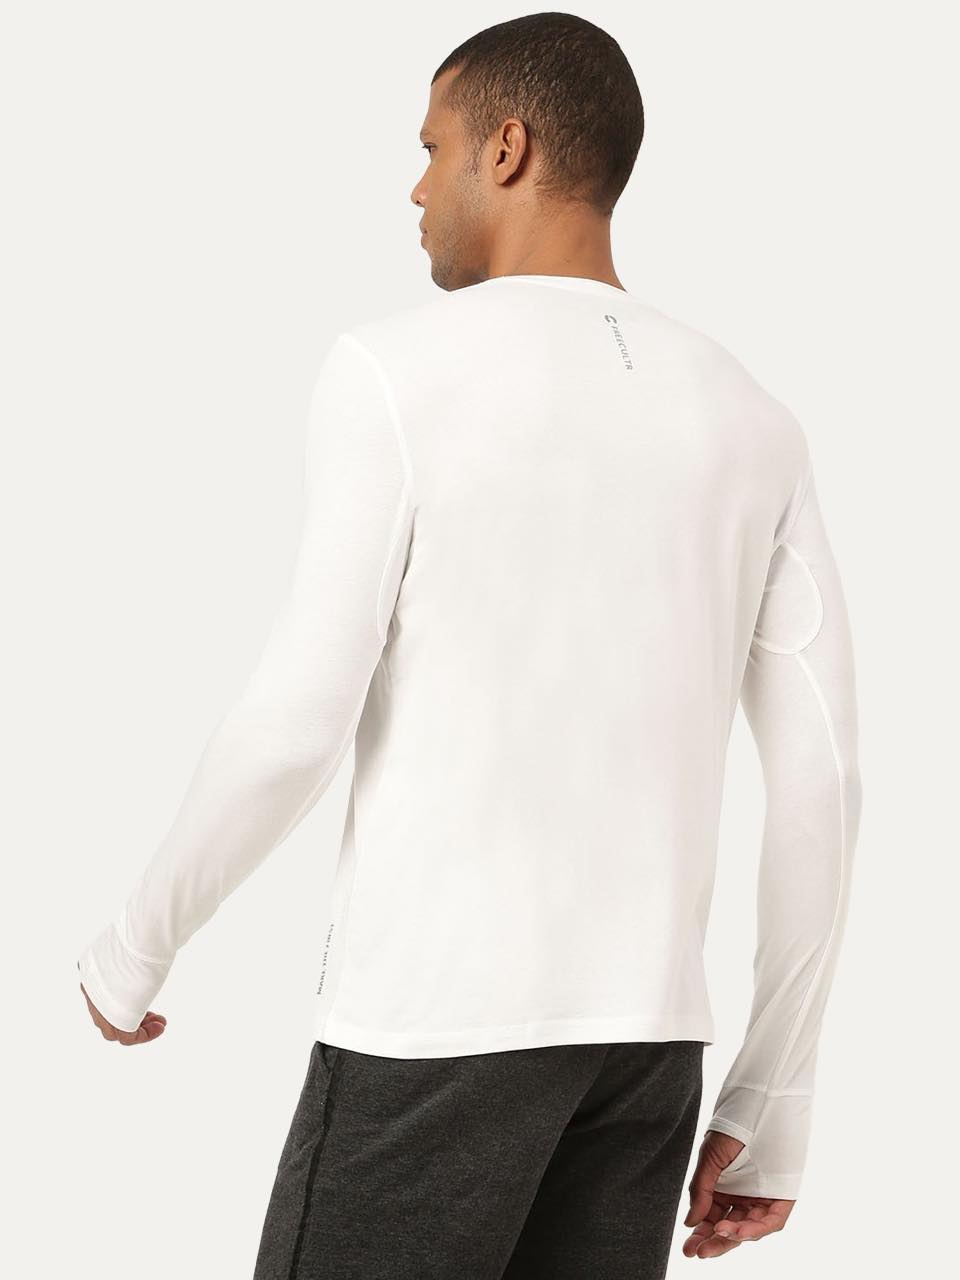 Men's Organic Bamboo Skins (Full Sleeves-Undershirt, Loungewear, Sleepwear) - Pack of 1